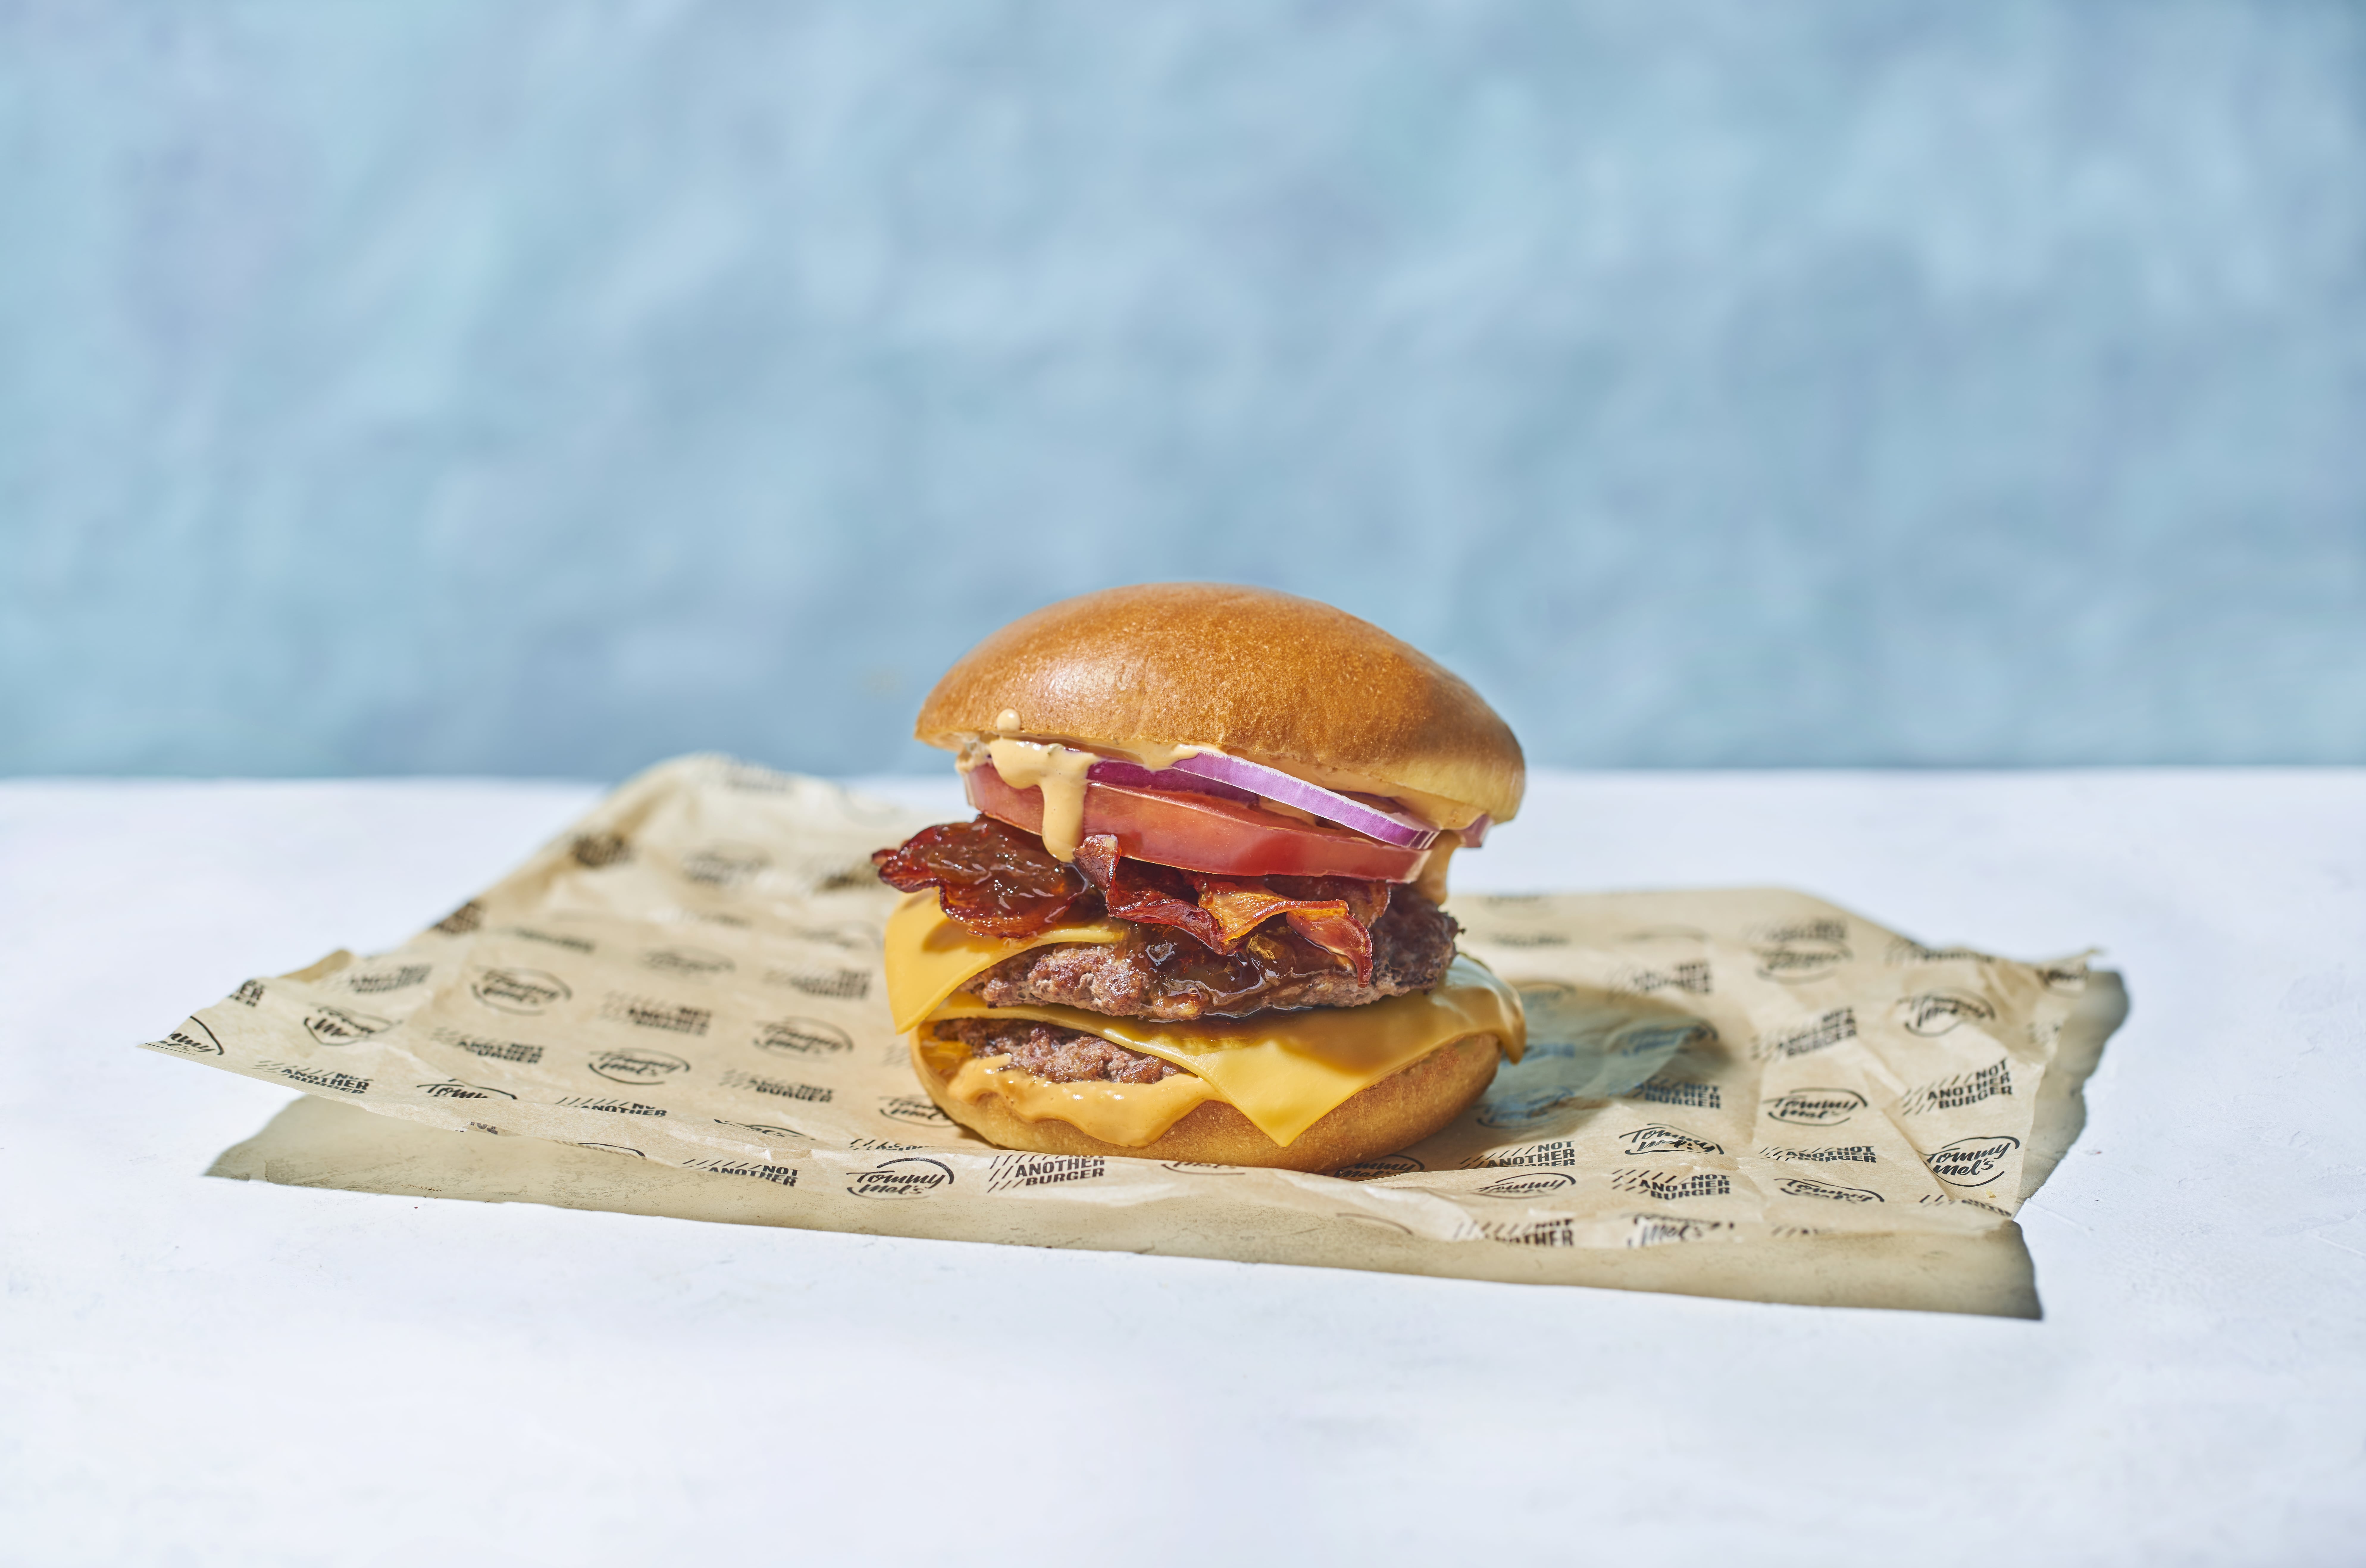 Doble Bacon Burger and Onion Smoke burger